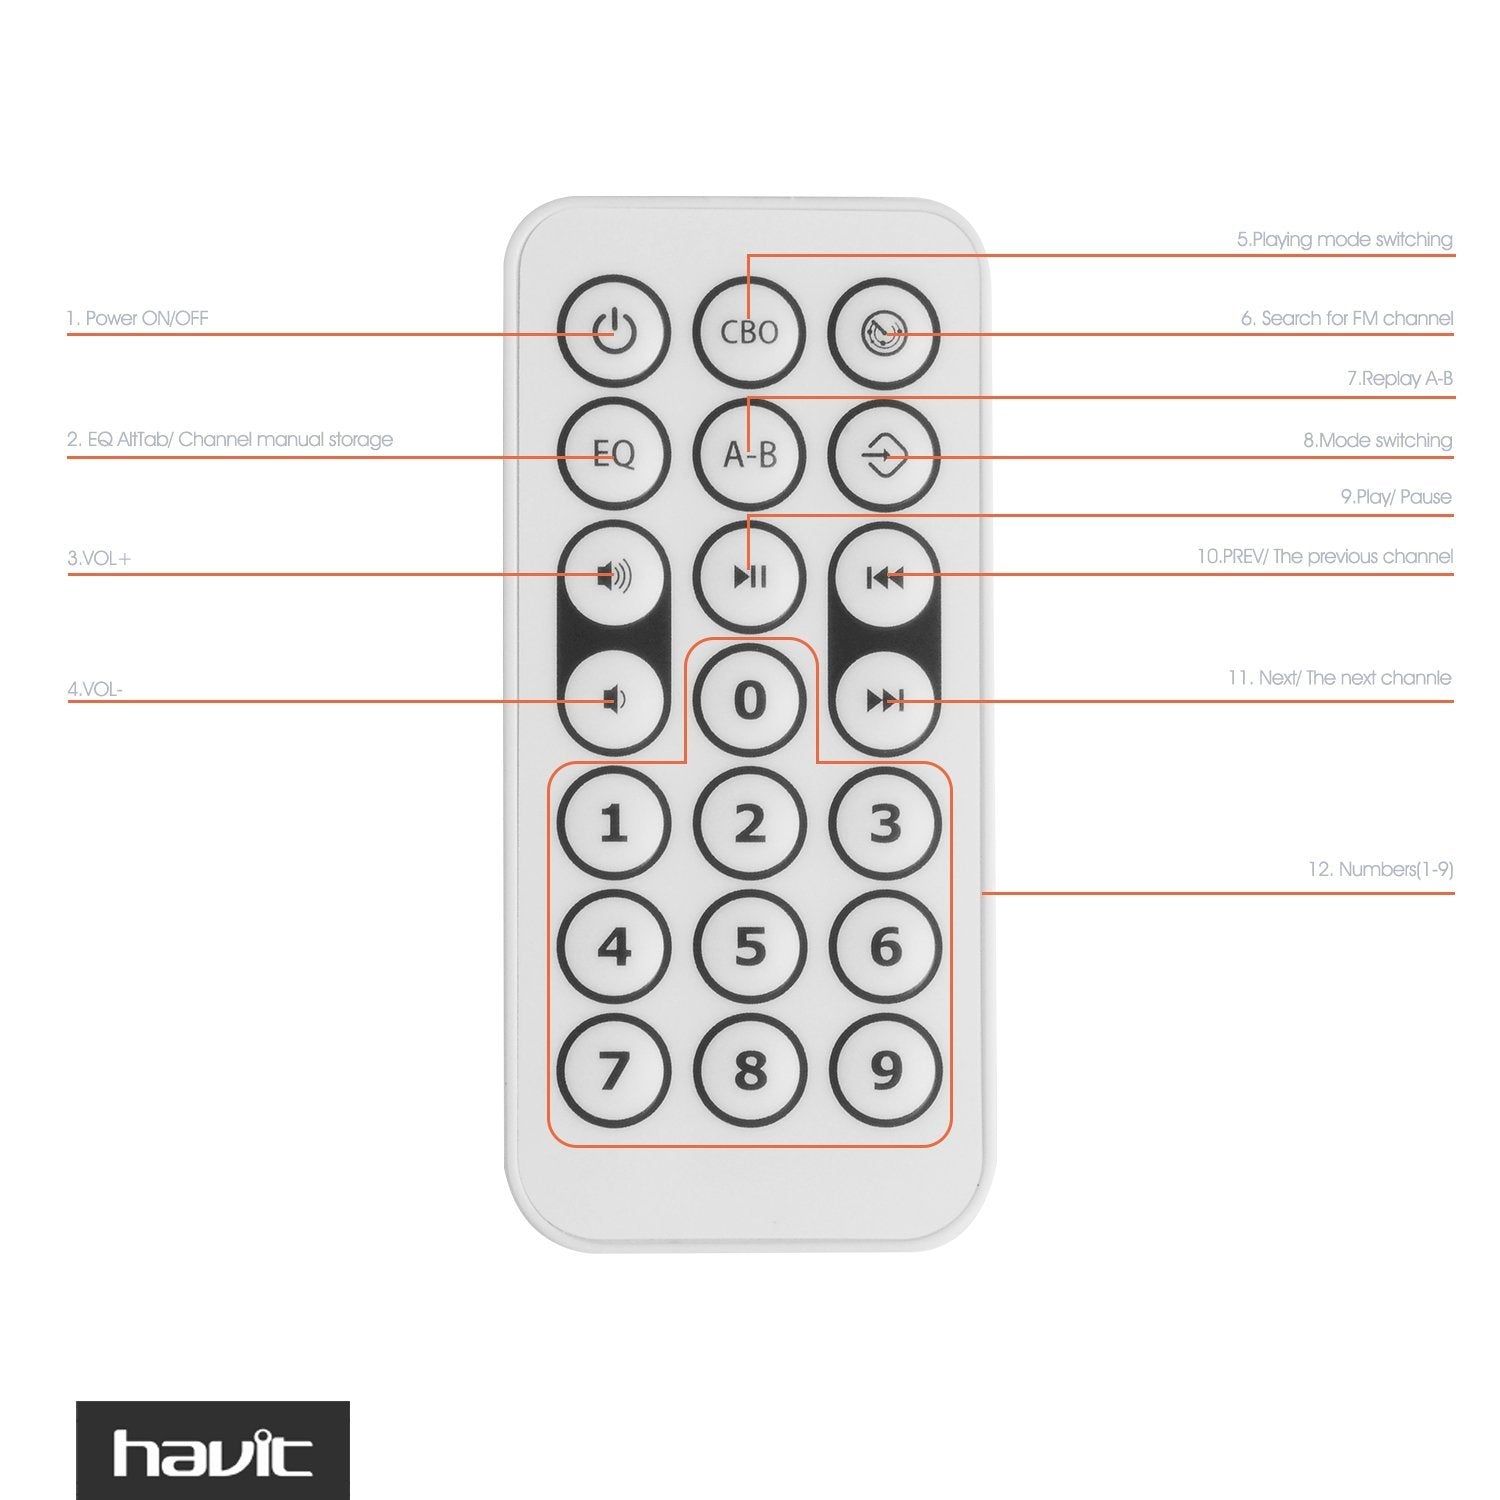 HAVIT M80 Ibox Tragbarer Bluetooth-Lautsprecher / Mini-Boombox für den Außenbereich